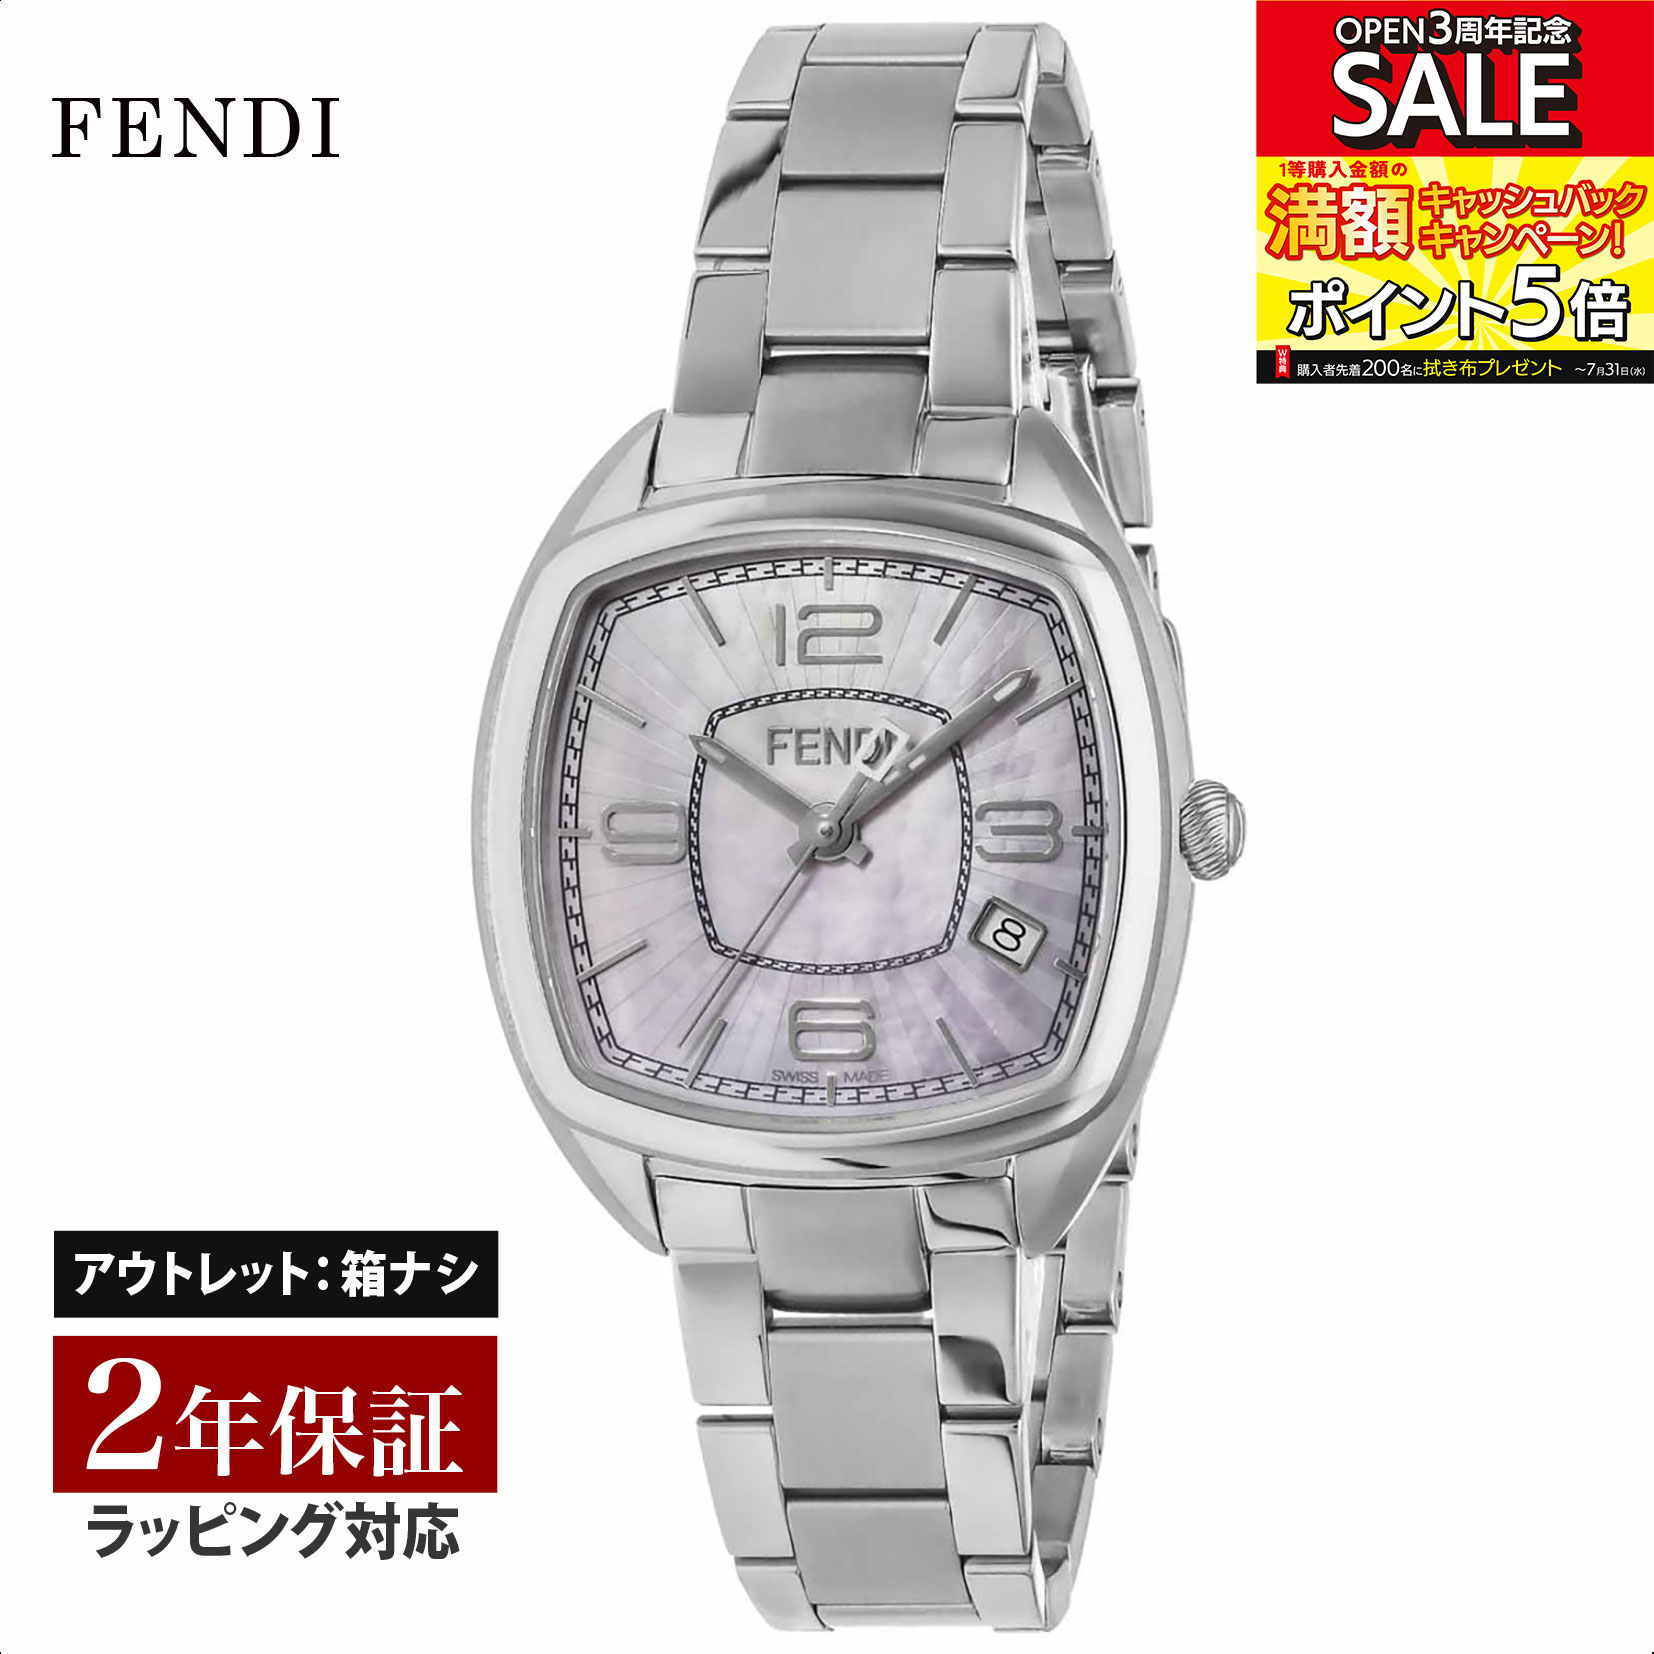 【クリアランスSALE】 FENDI フェンディ MomentoFendi クォーツ レディース ピンクパール F221037500 腕時計 高級腕時計 ブランド 